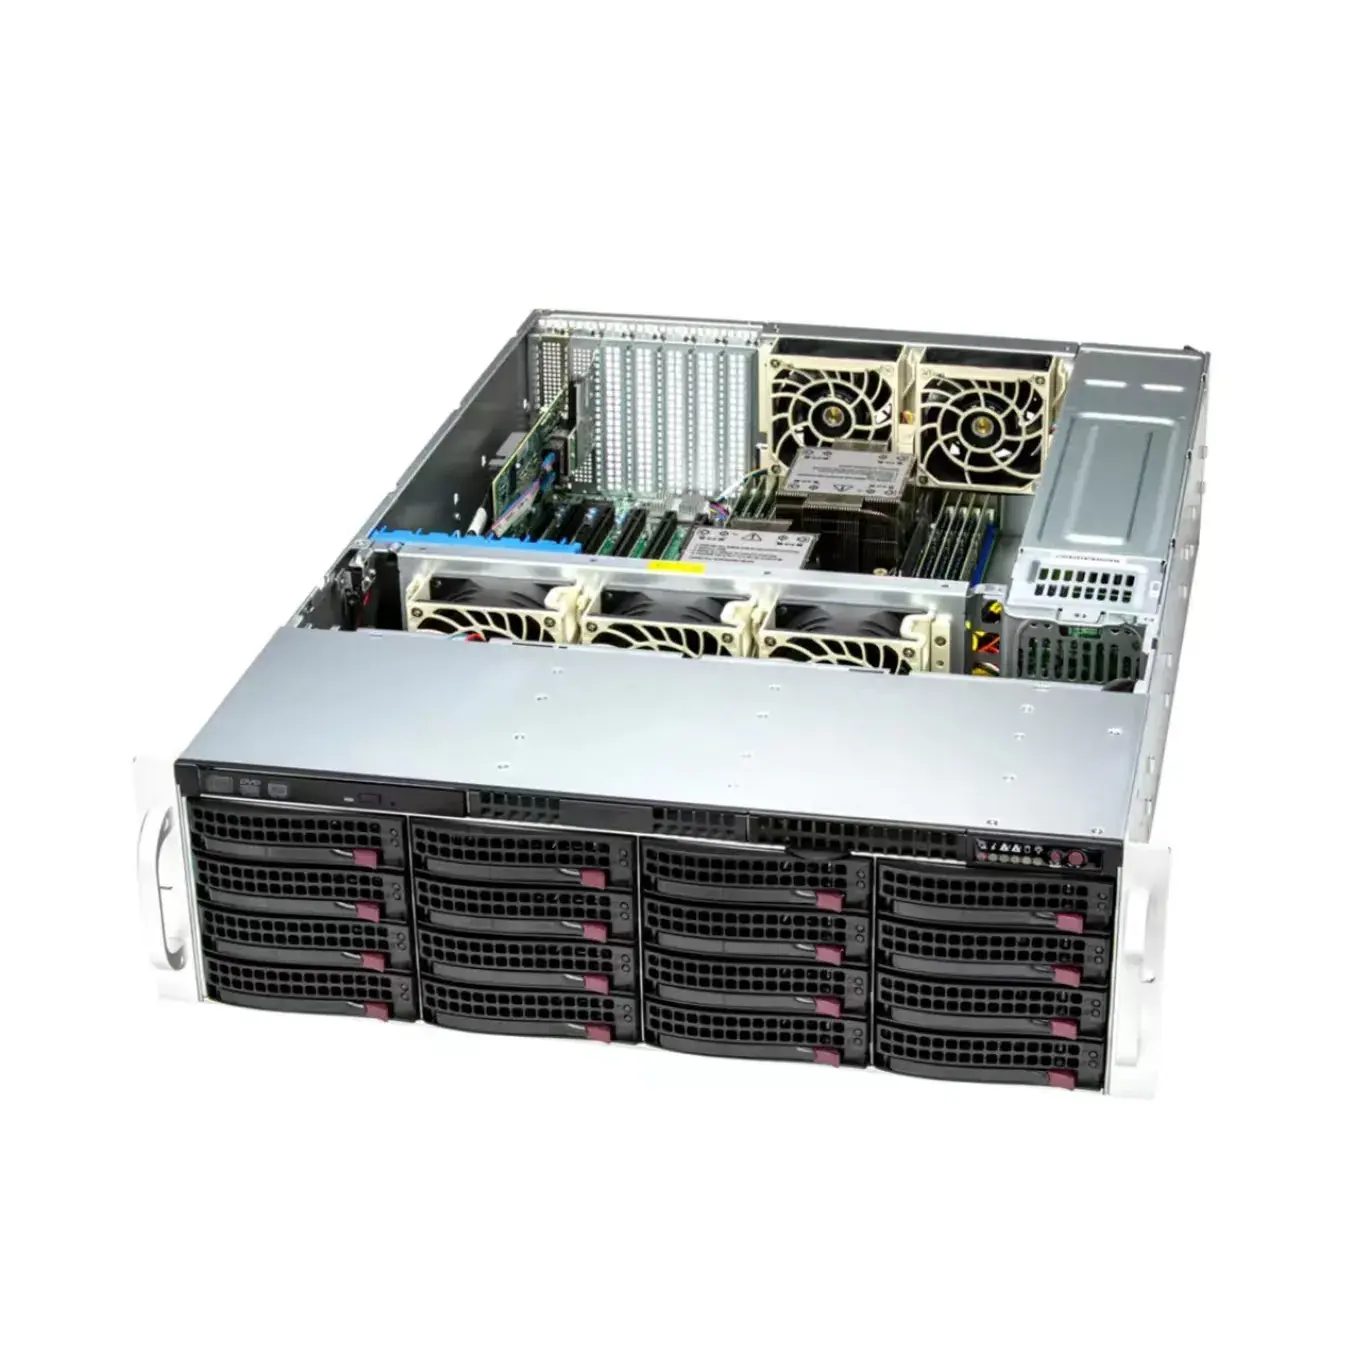 고성능 슈퍼마이크로 슈퍼서버 SSG-631E-E1CR16L 스토리지 서버